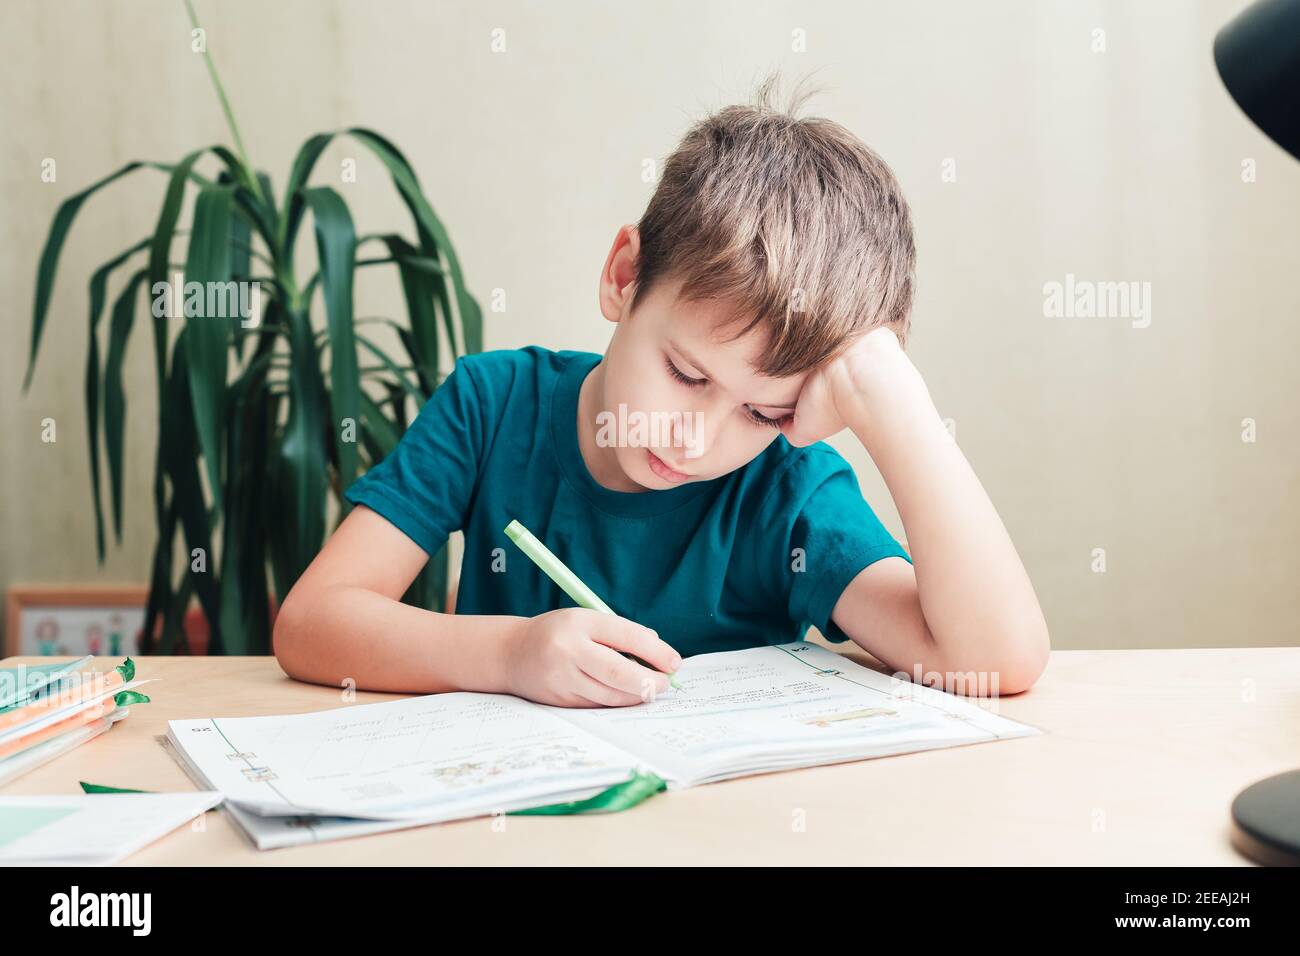 7 Jahre alter Junge, der am Schreibtisch sitzt und Hausaufgaben macht. Kind schreibt Notizen im Notizbuch, schwierige Hausaufgaben, Kind konzentriert sich auf Beispiele Stockfoto